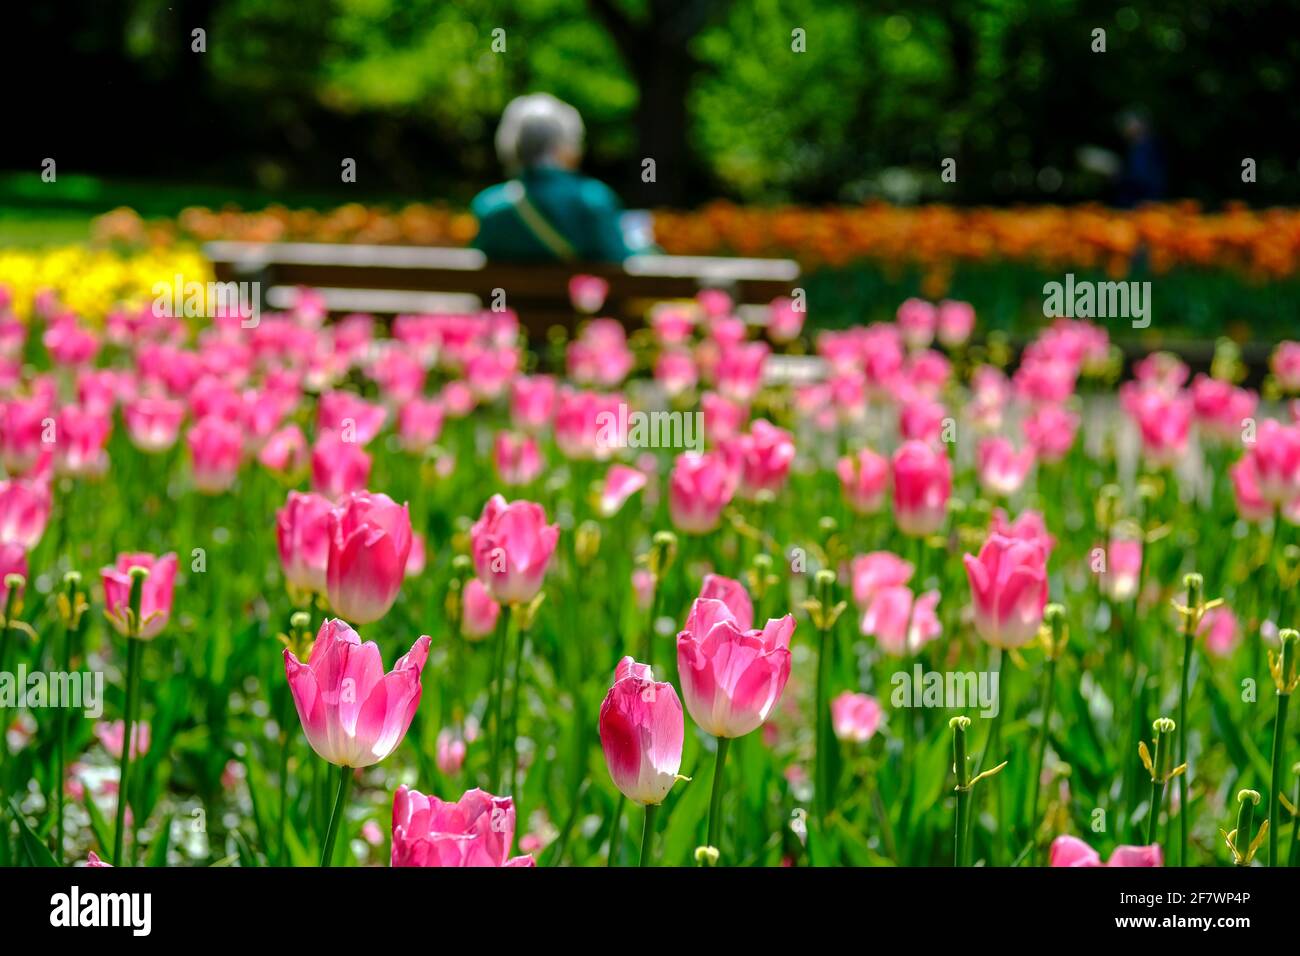 30.04.2020, Essen, Ruhrgebiet, Nordrhein-Westfalen, Deutschland - eine Frau sitzt allein auf einer Bank zwischen Tulpenbeeten im Gruga-Park in Essen u Stock Photo